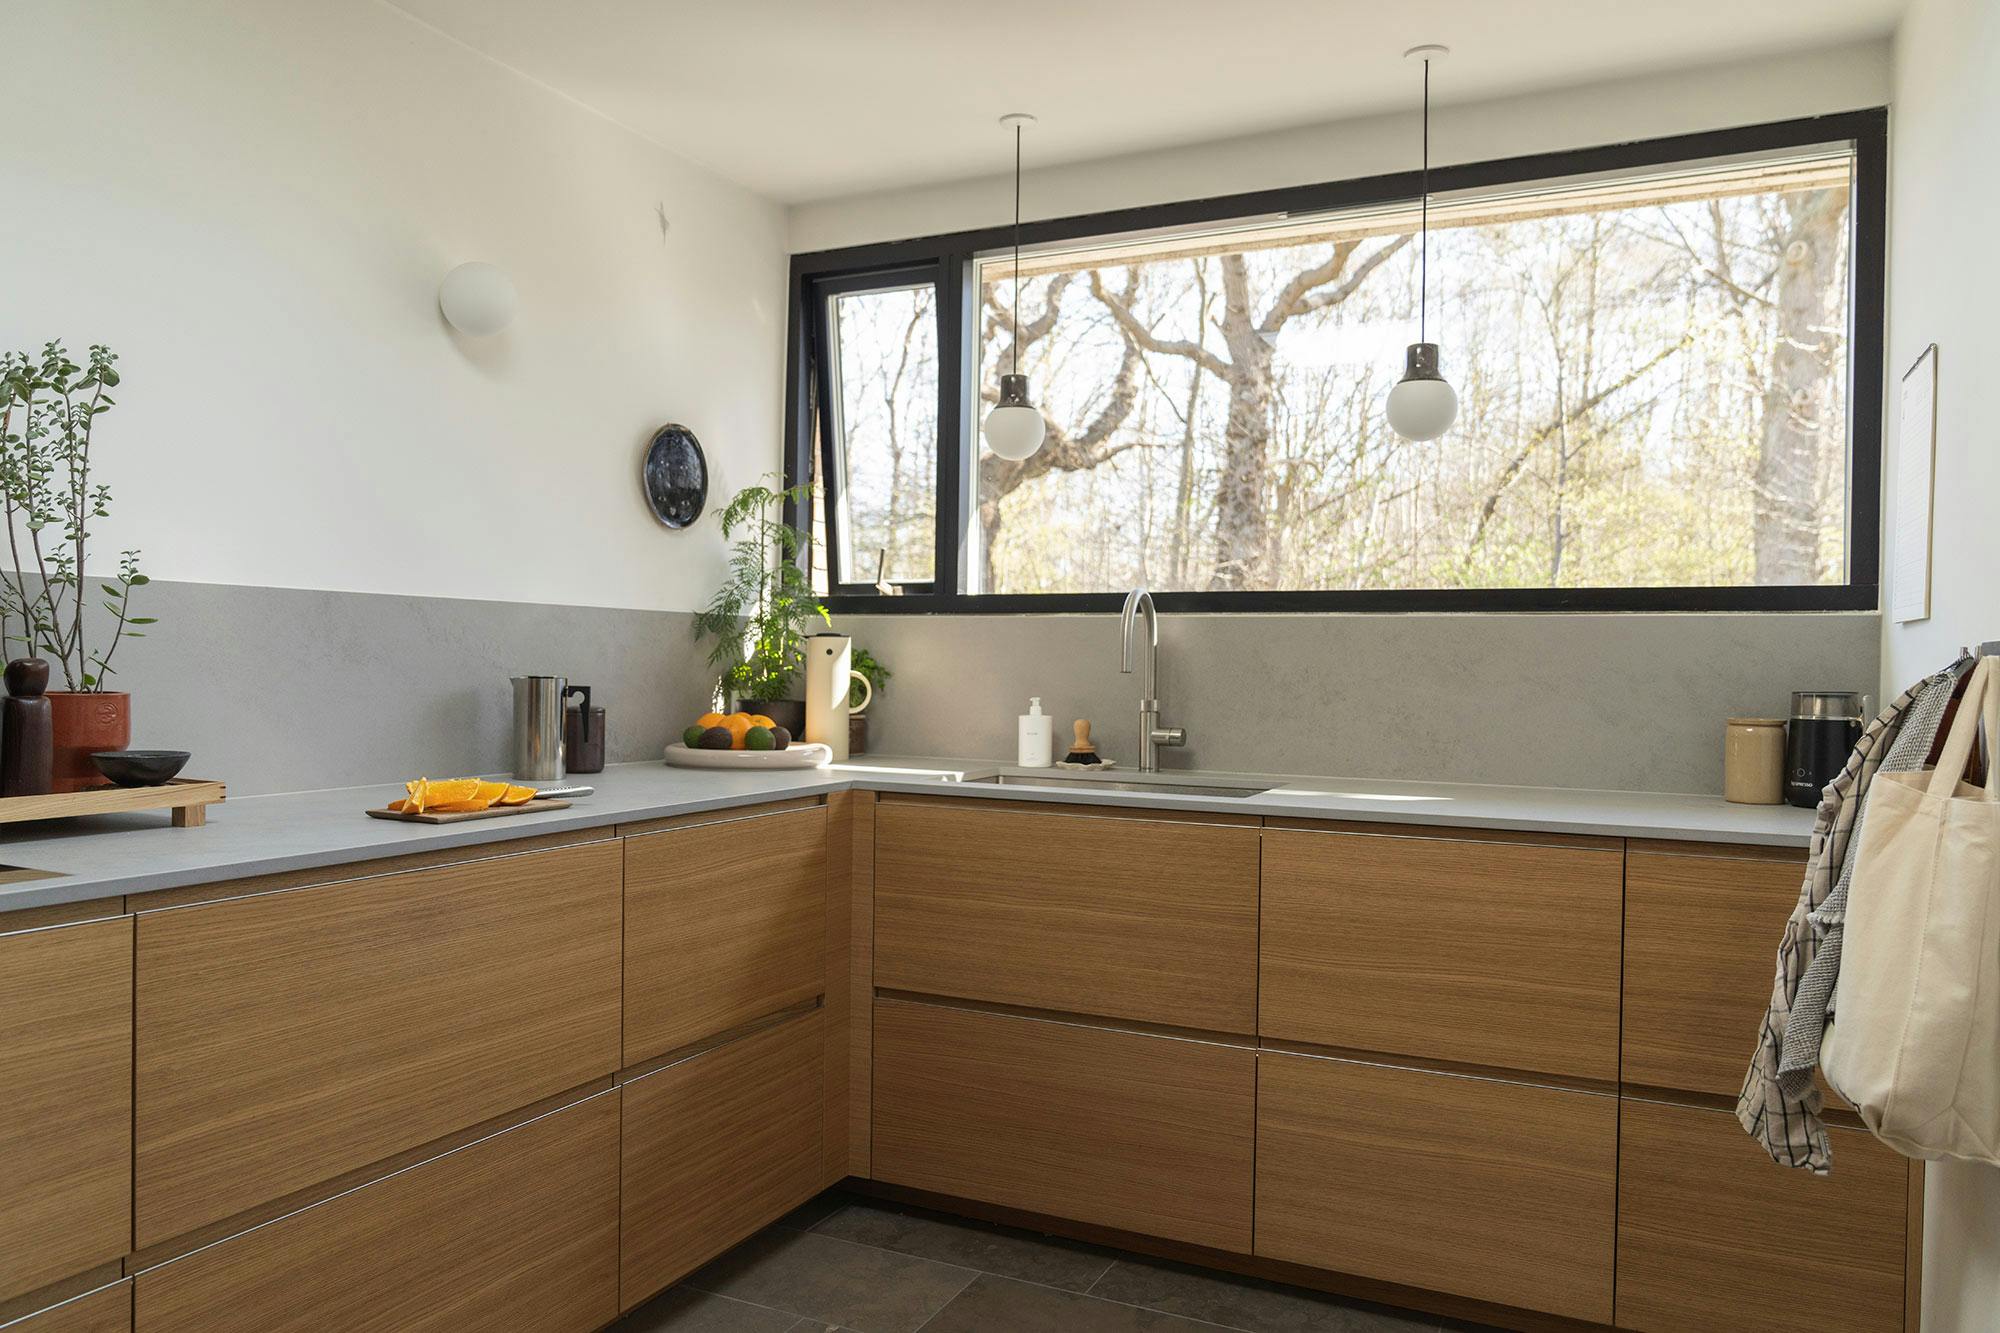 Numero immagine 38 della sezione corrente di Designer Saana Mantere chooses DKTN for her kitchen renovation di Cosentino Italia